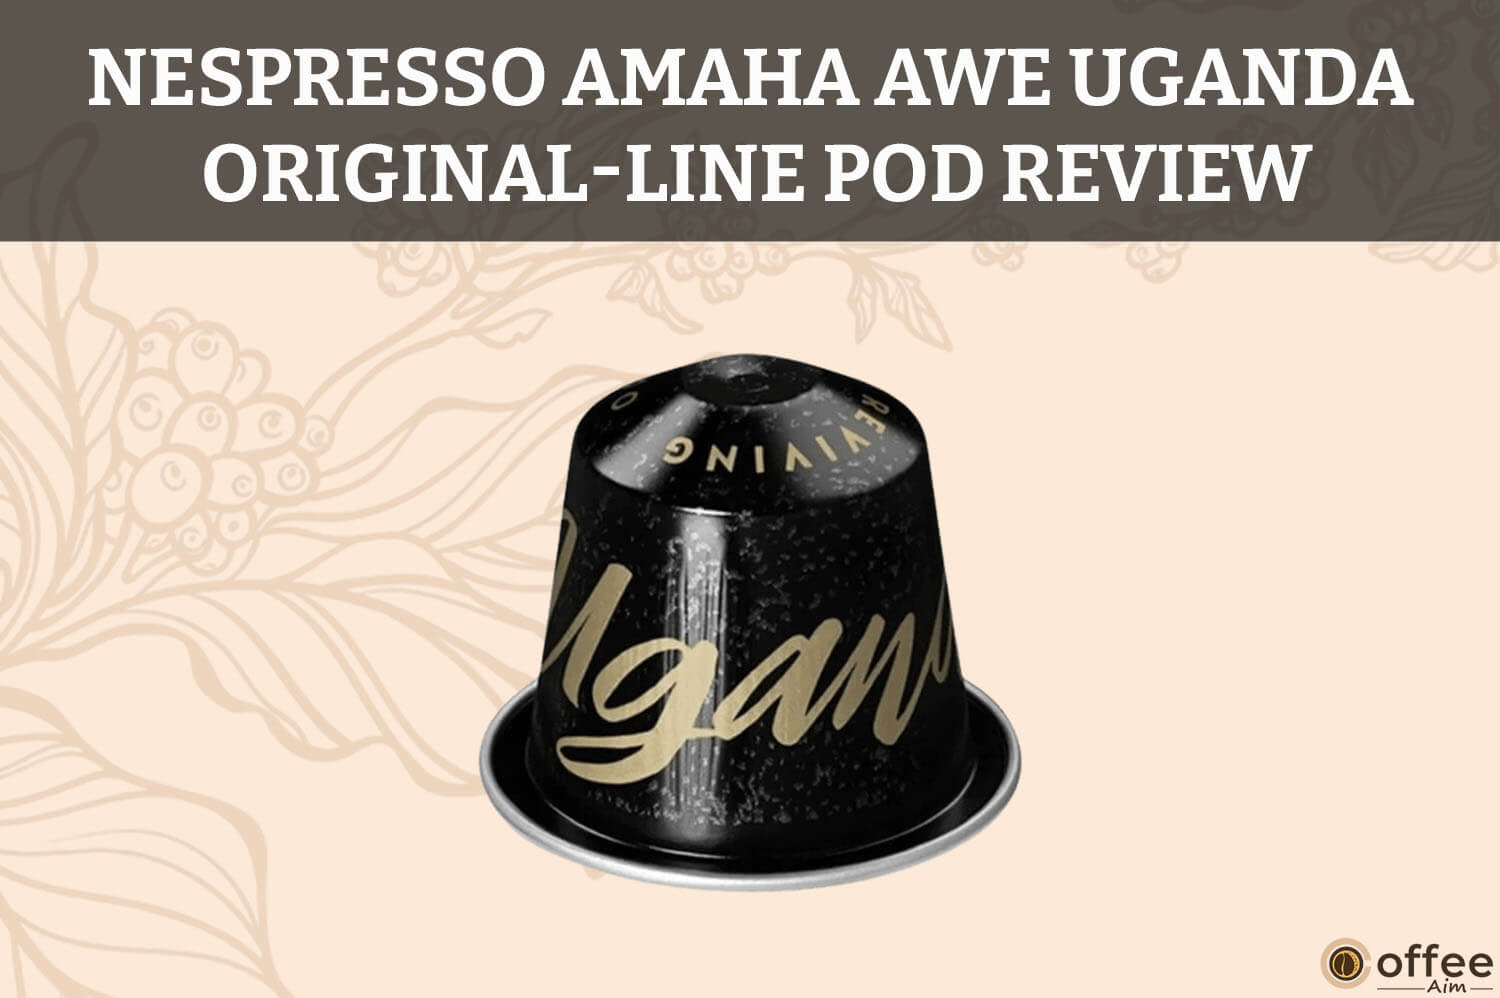 Nespresso-Amaha-Awe-Uganda-OriginalLine-Pod-Review